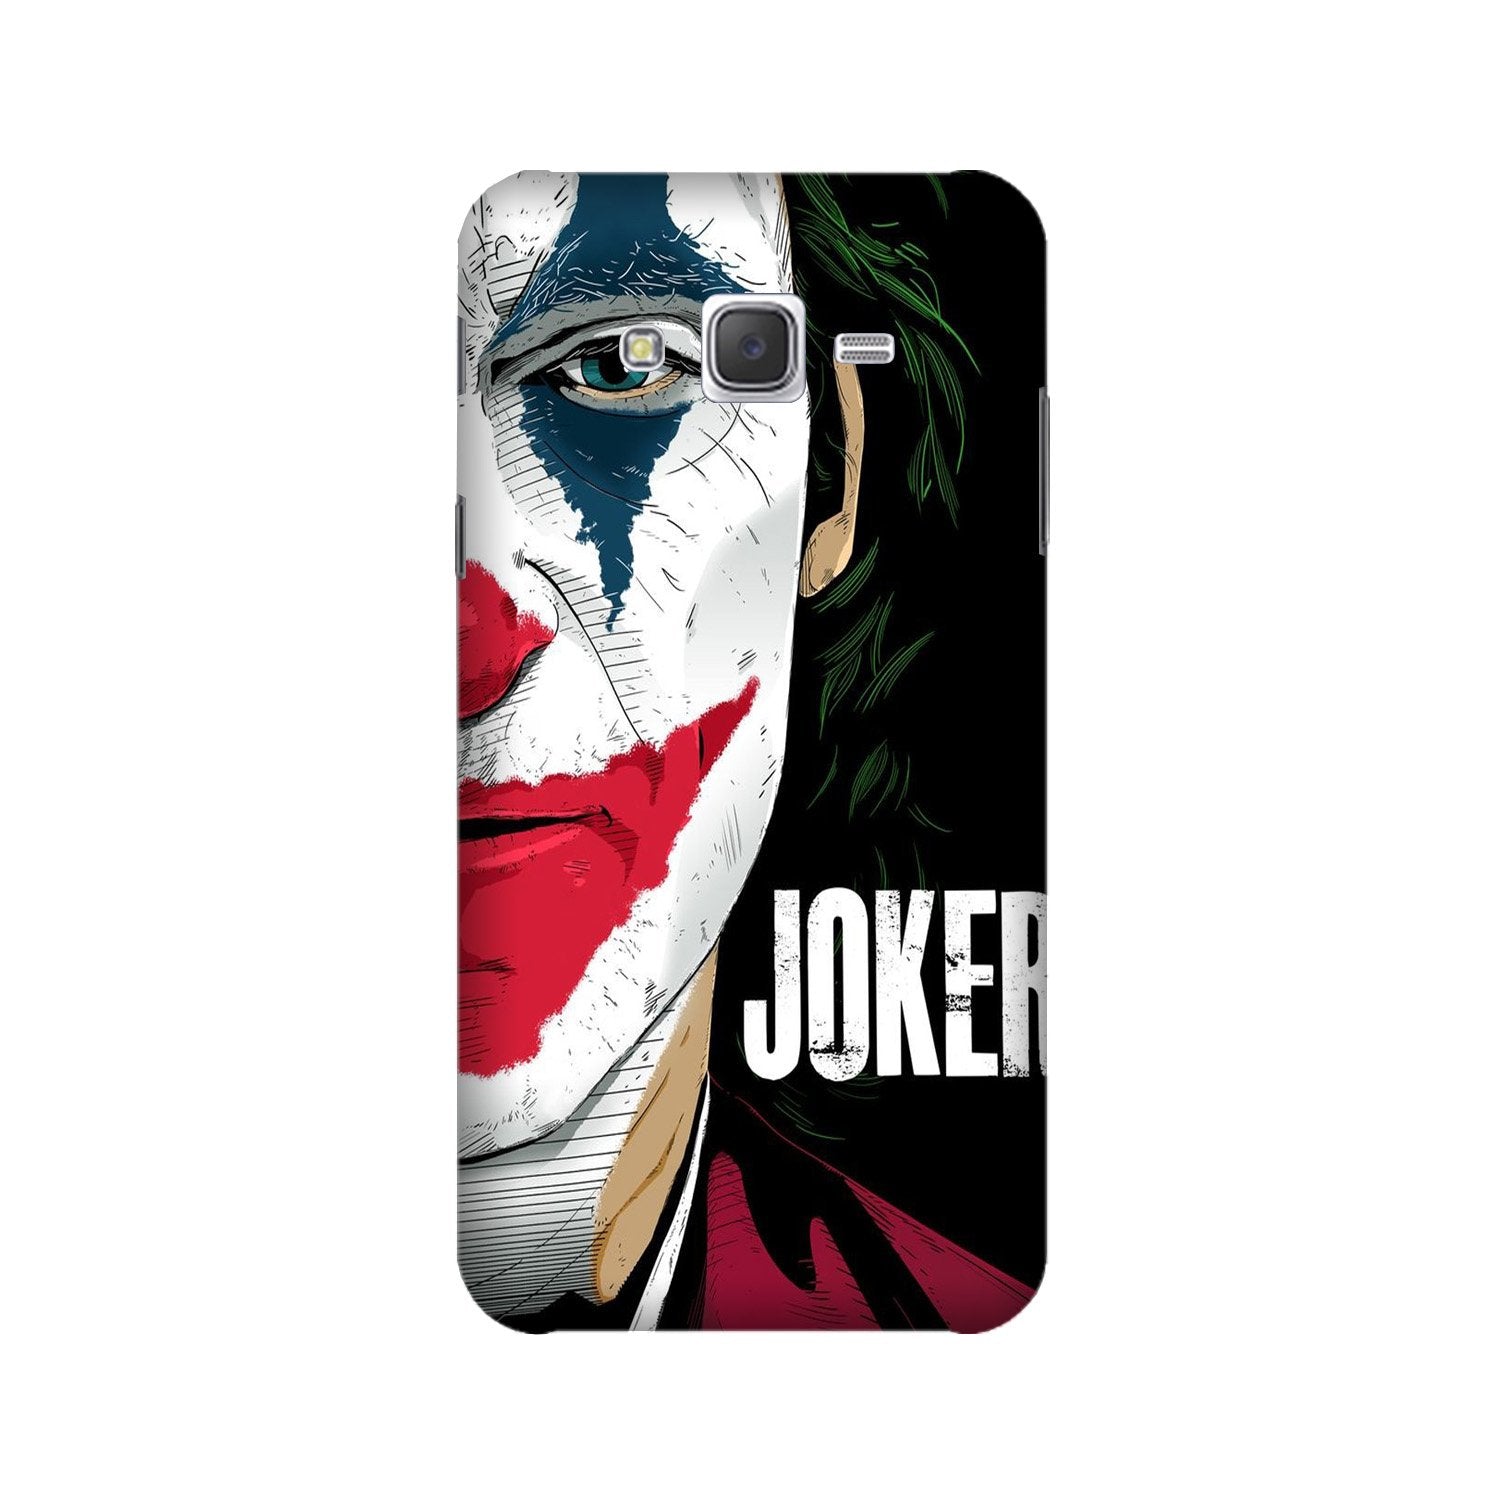 Joker Mobile Back Case for Galaxy J7 (2015) (Design - 301)